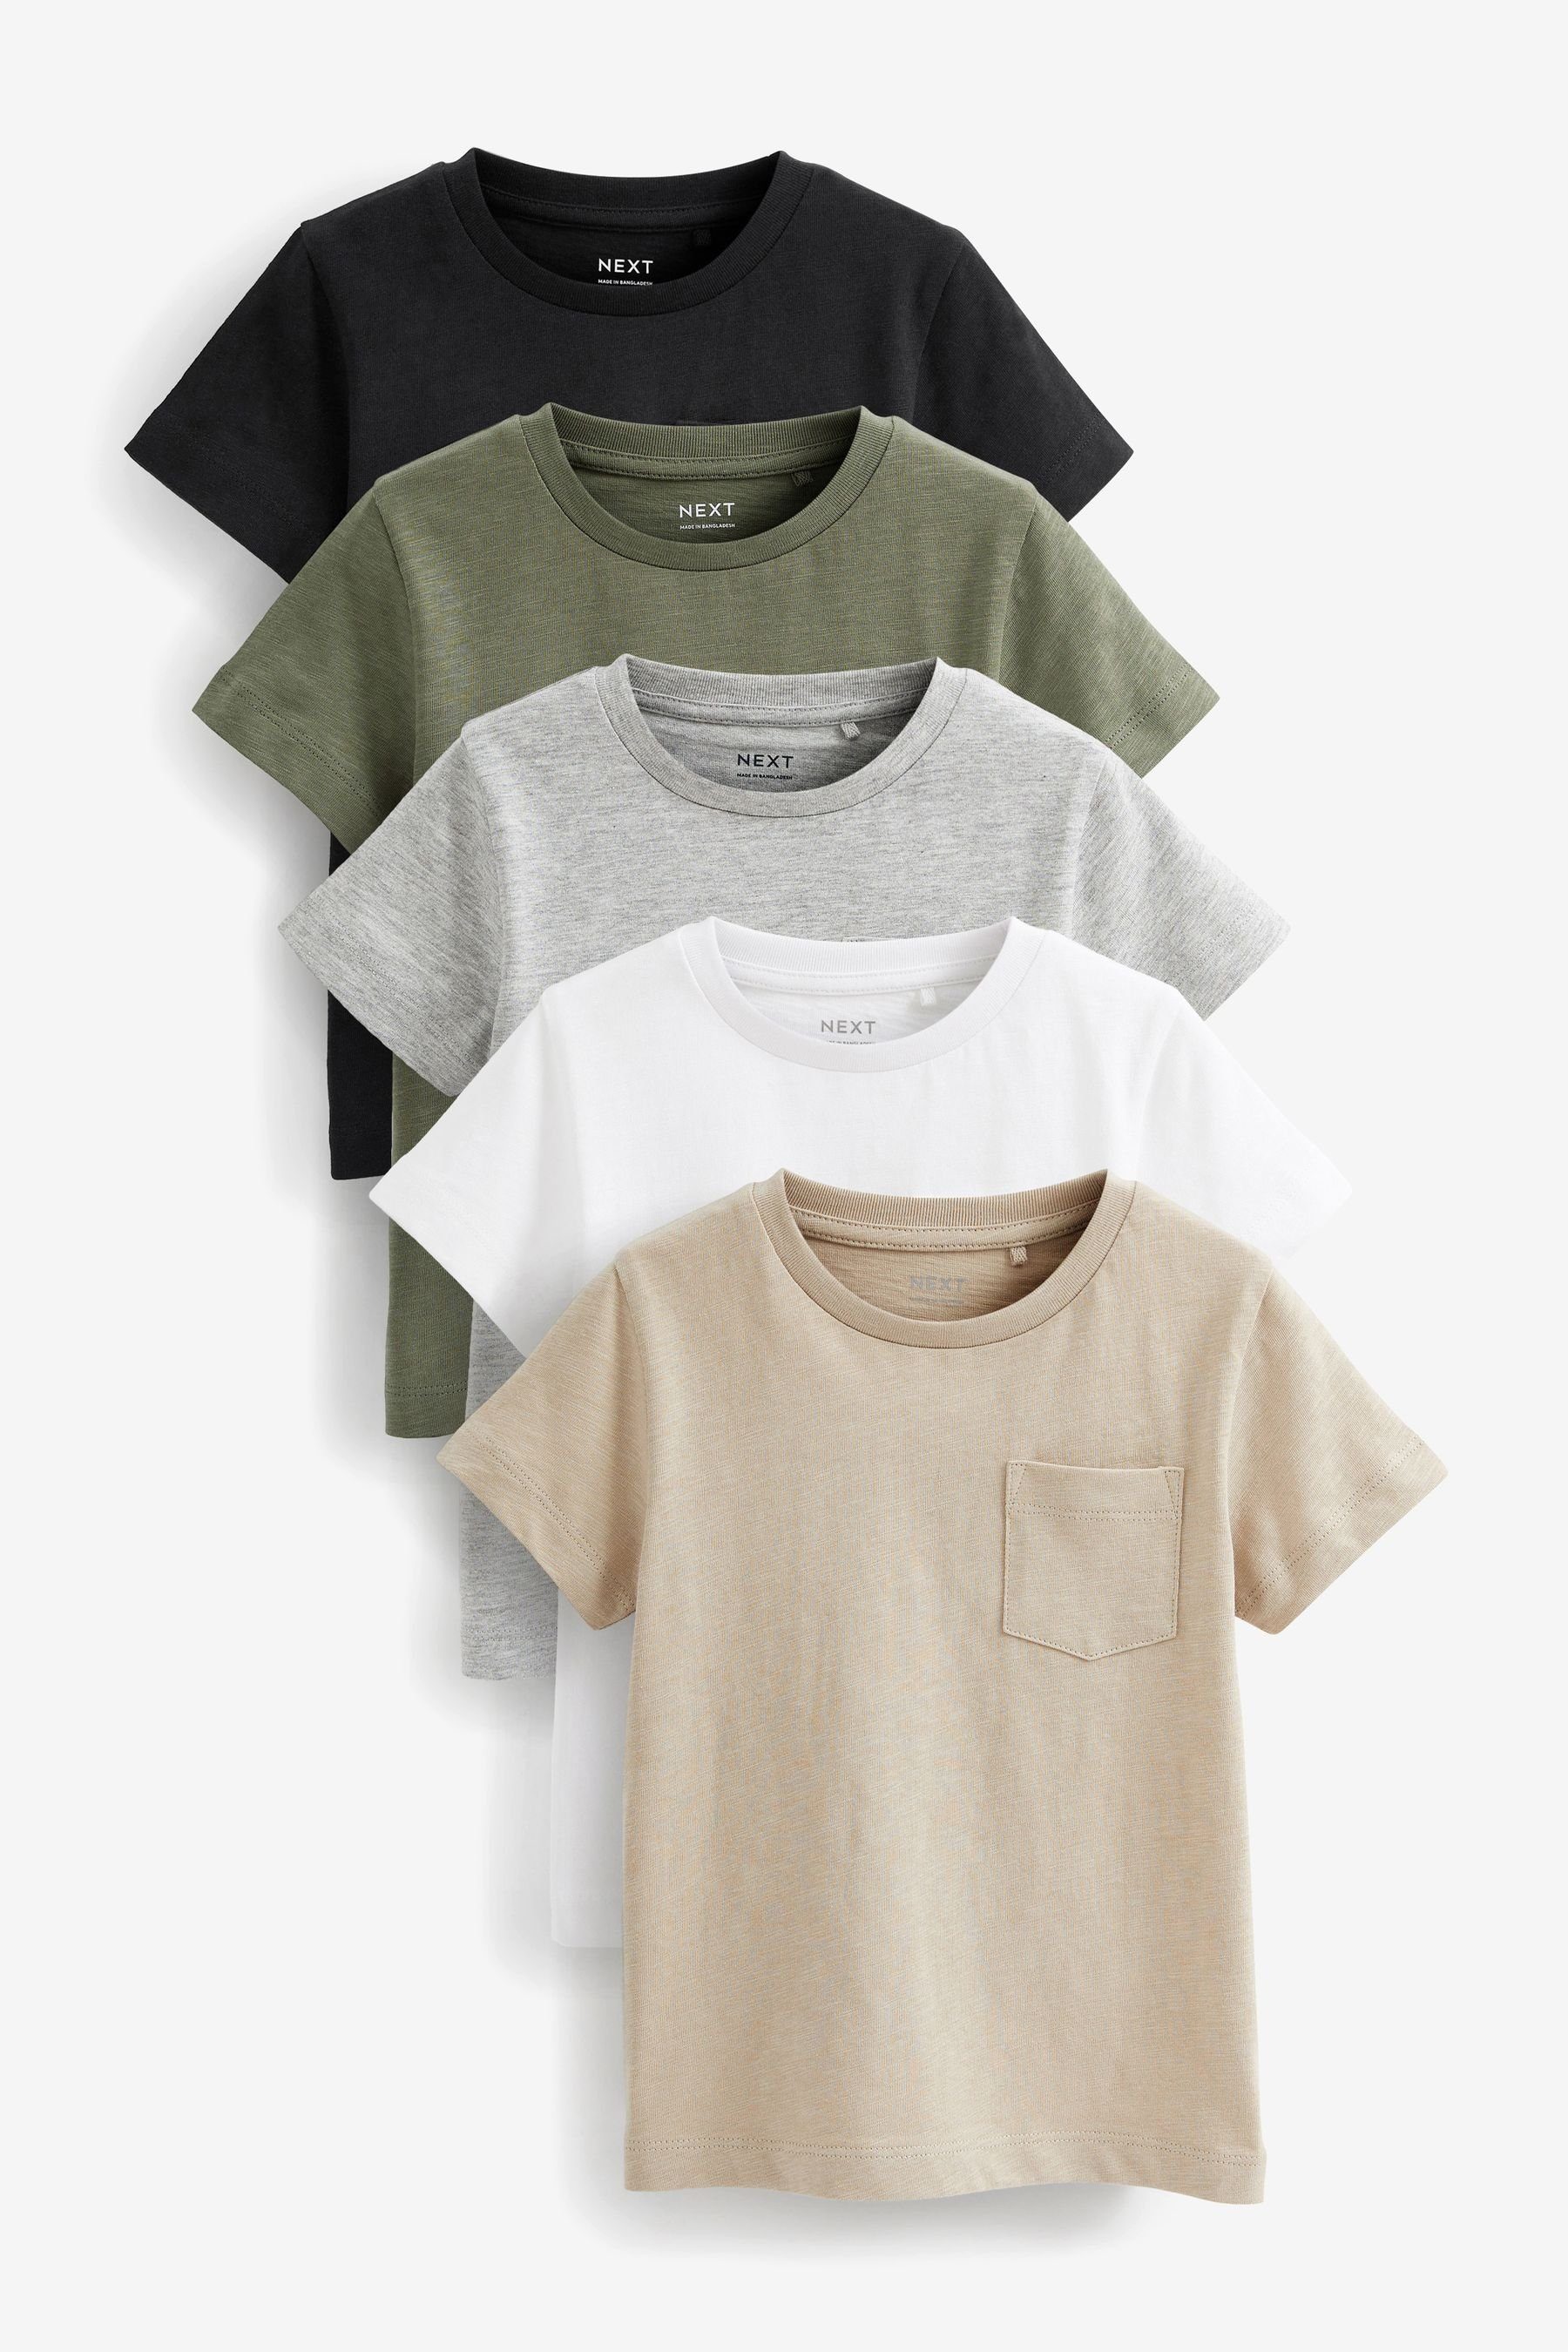 Next T-Shirt Kurzärmelige schlichte T-Shirts im 5er-Pack (5-tlg) Black/Grey